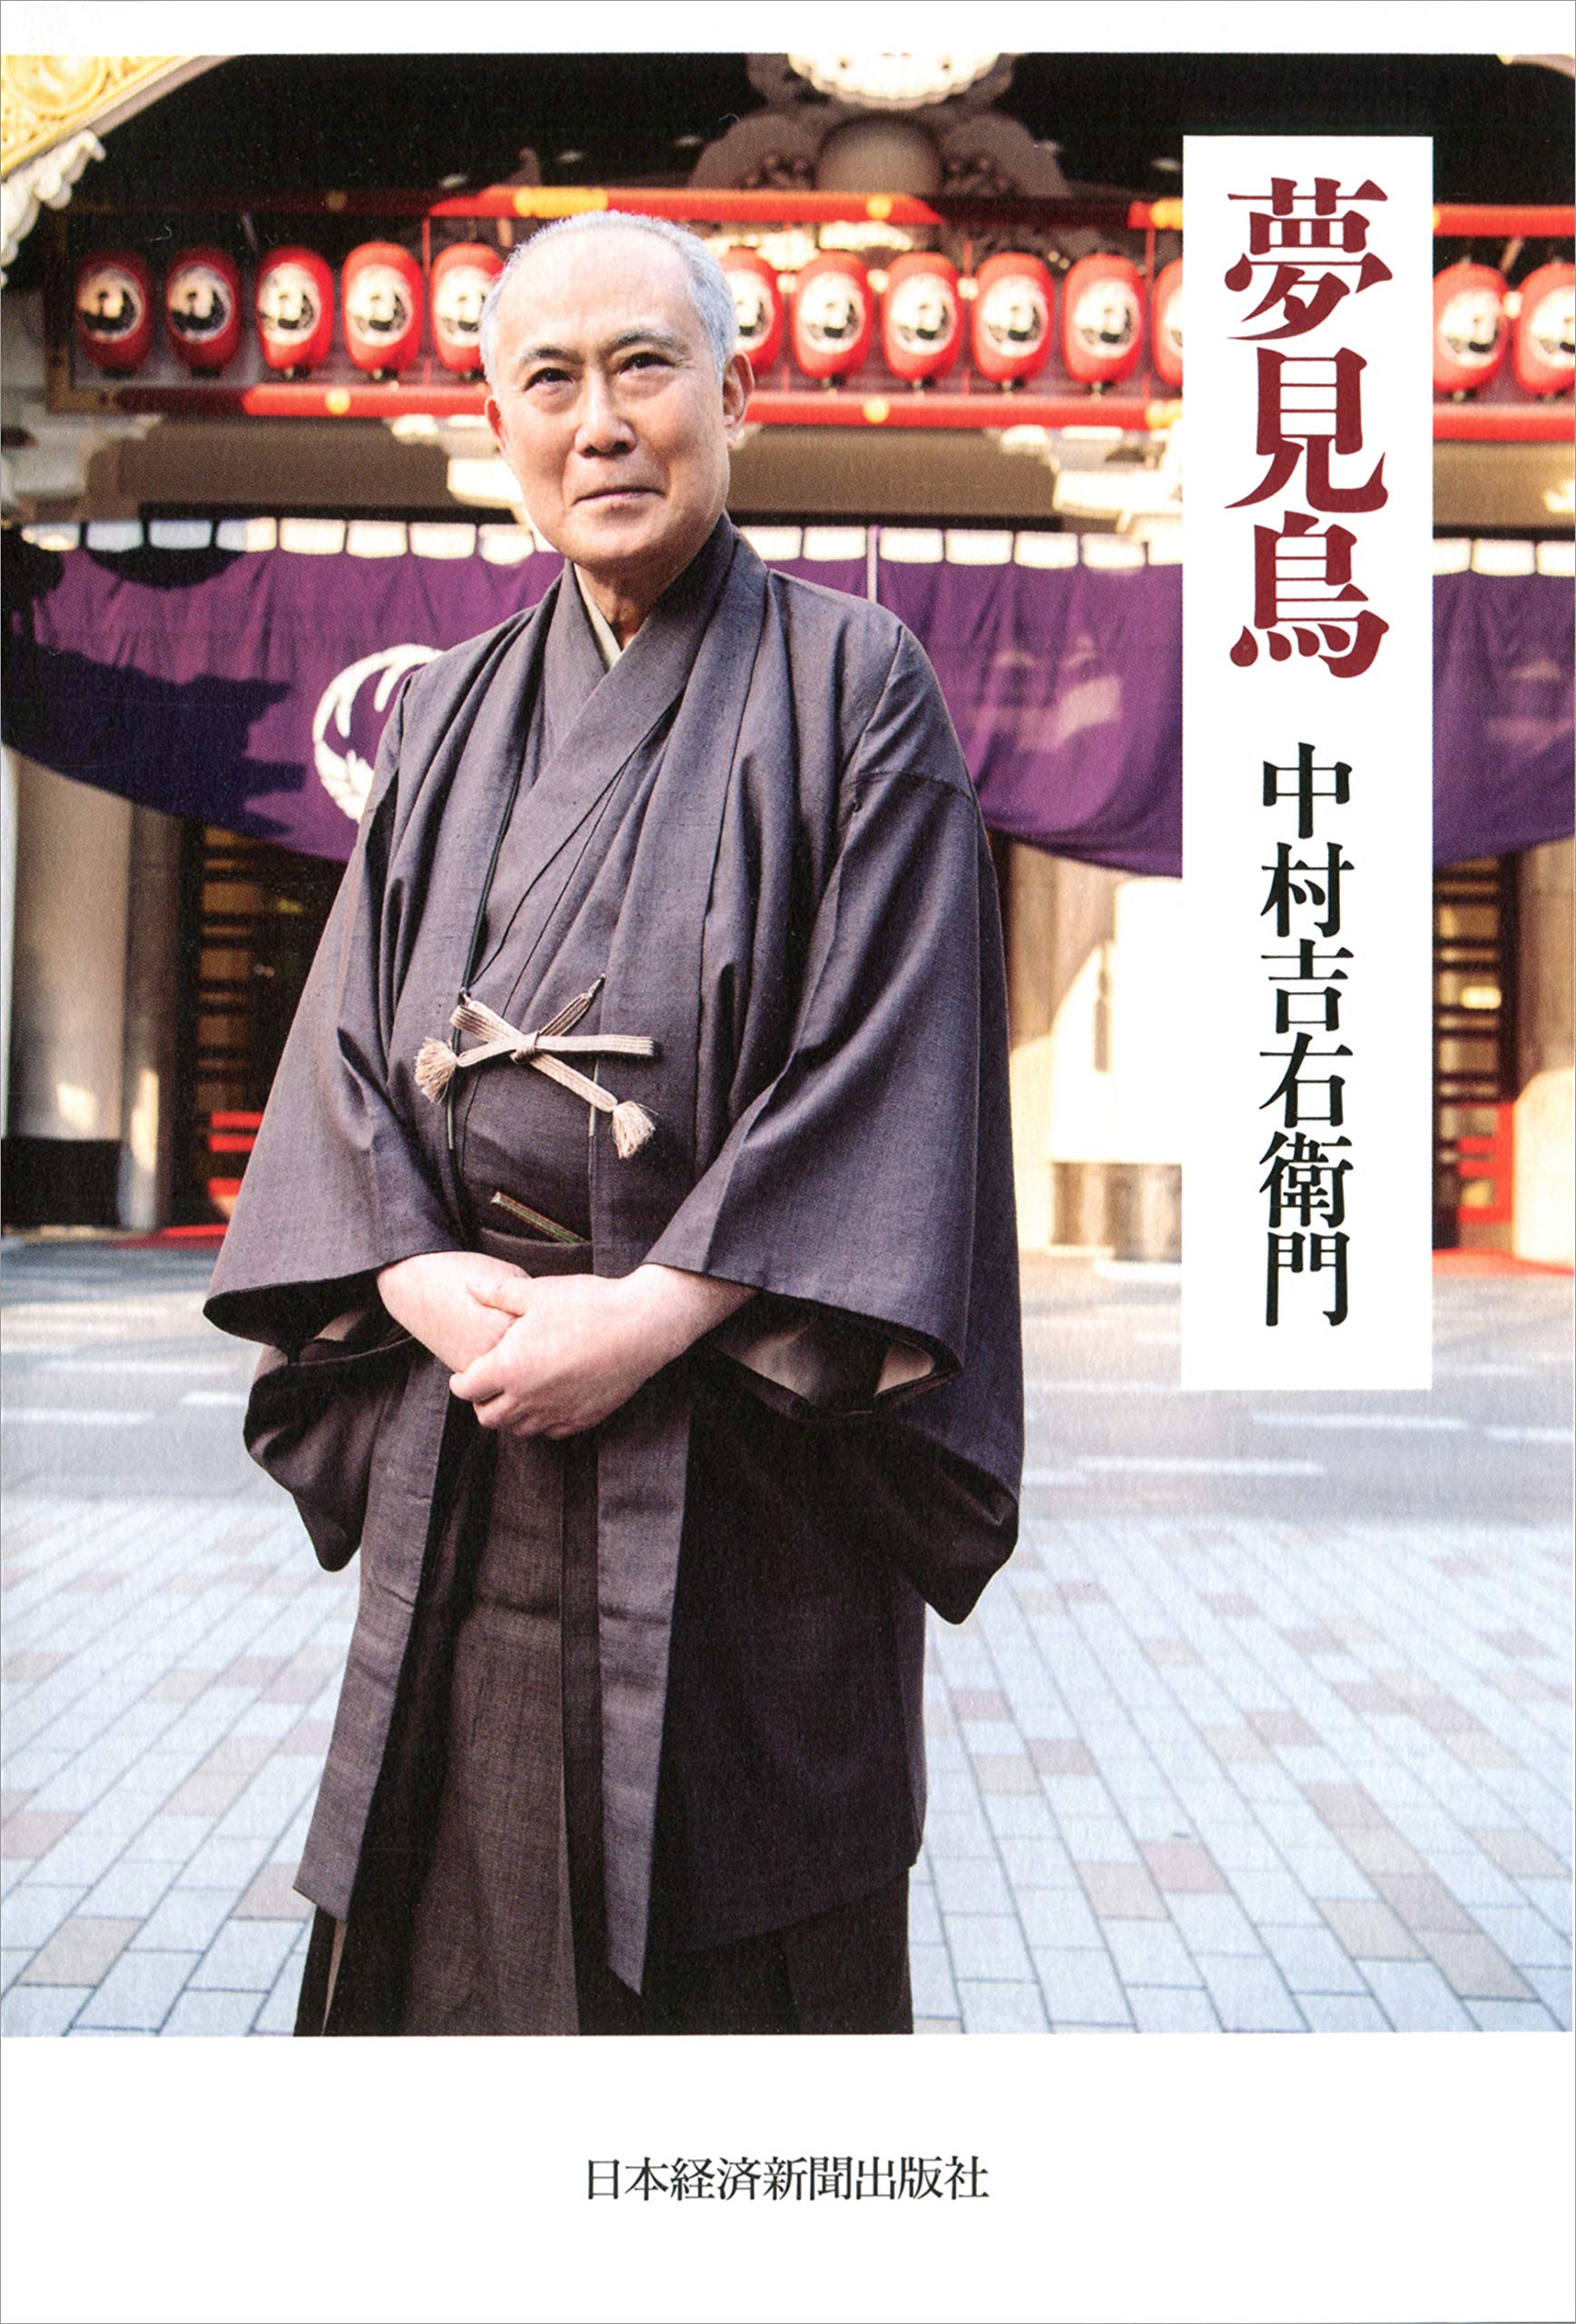 偉大なる「立役」逝く！享年77・歌舞伎役者中村吉右衛門「舞台での驚くべき深み」の理由の画像